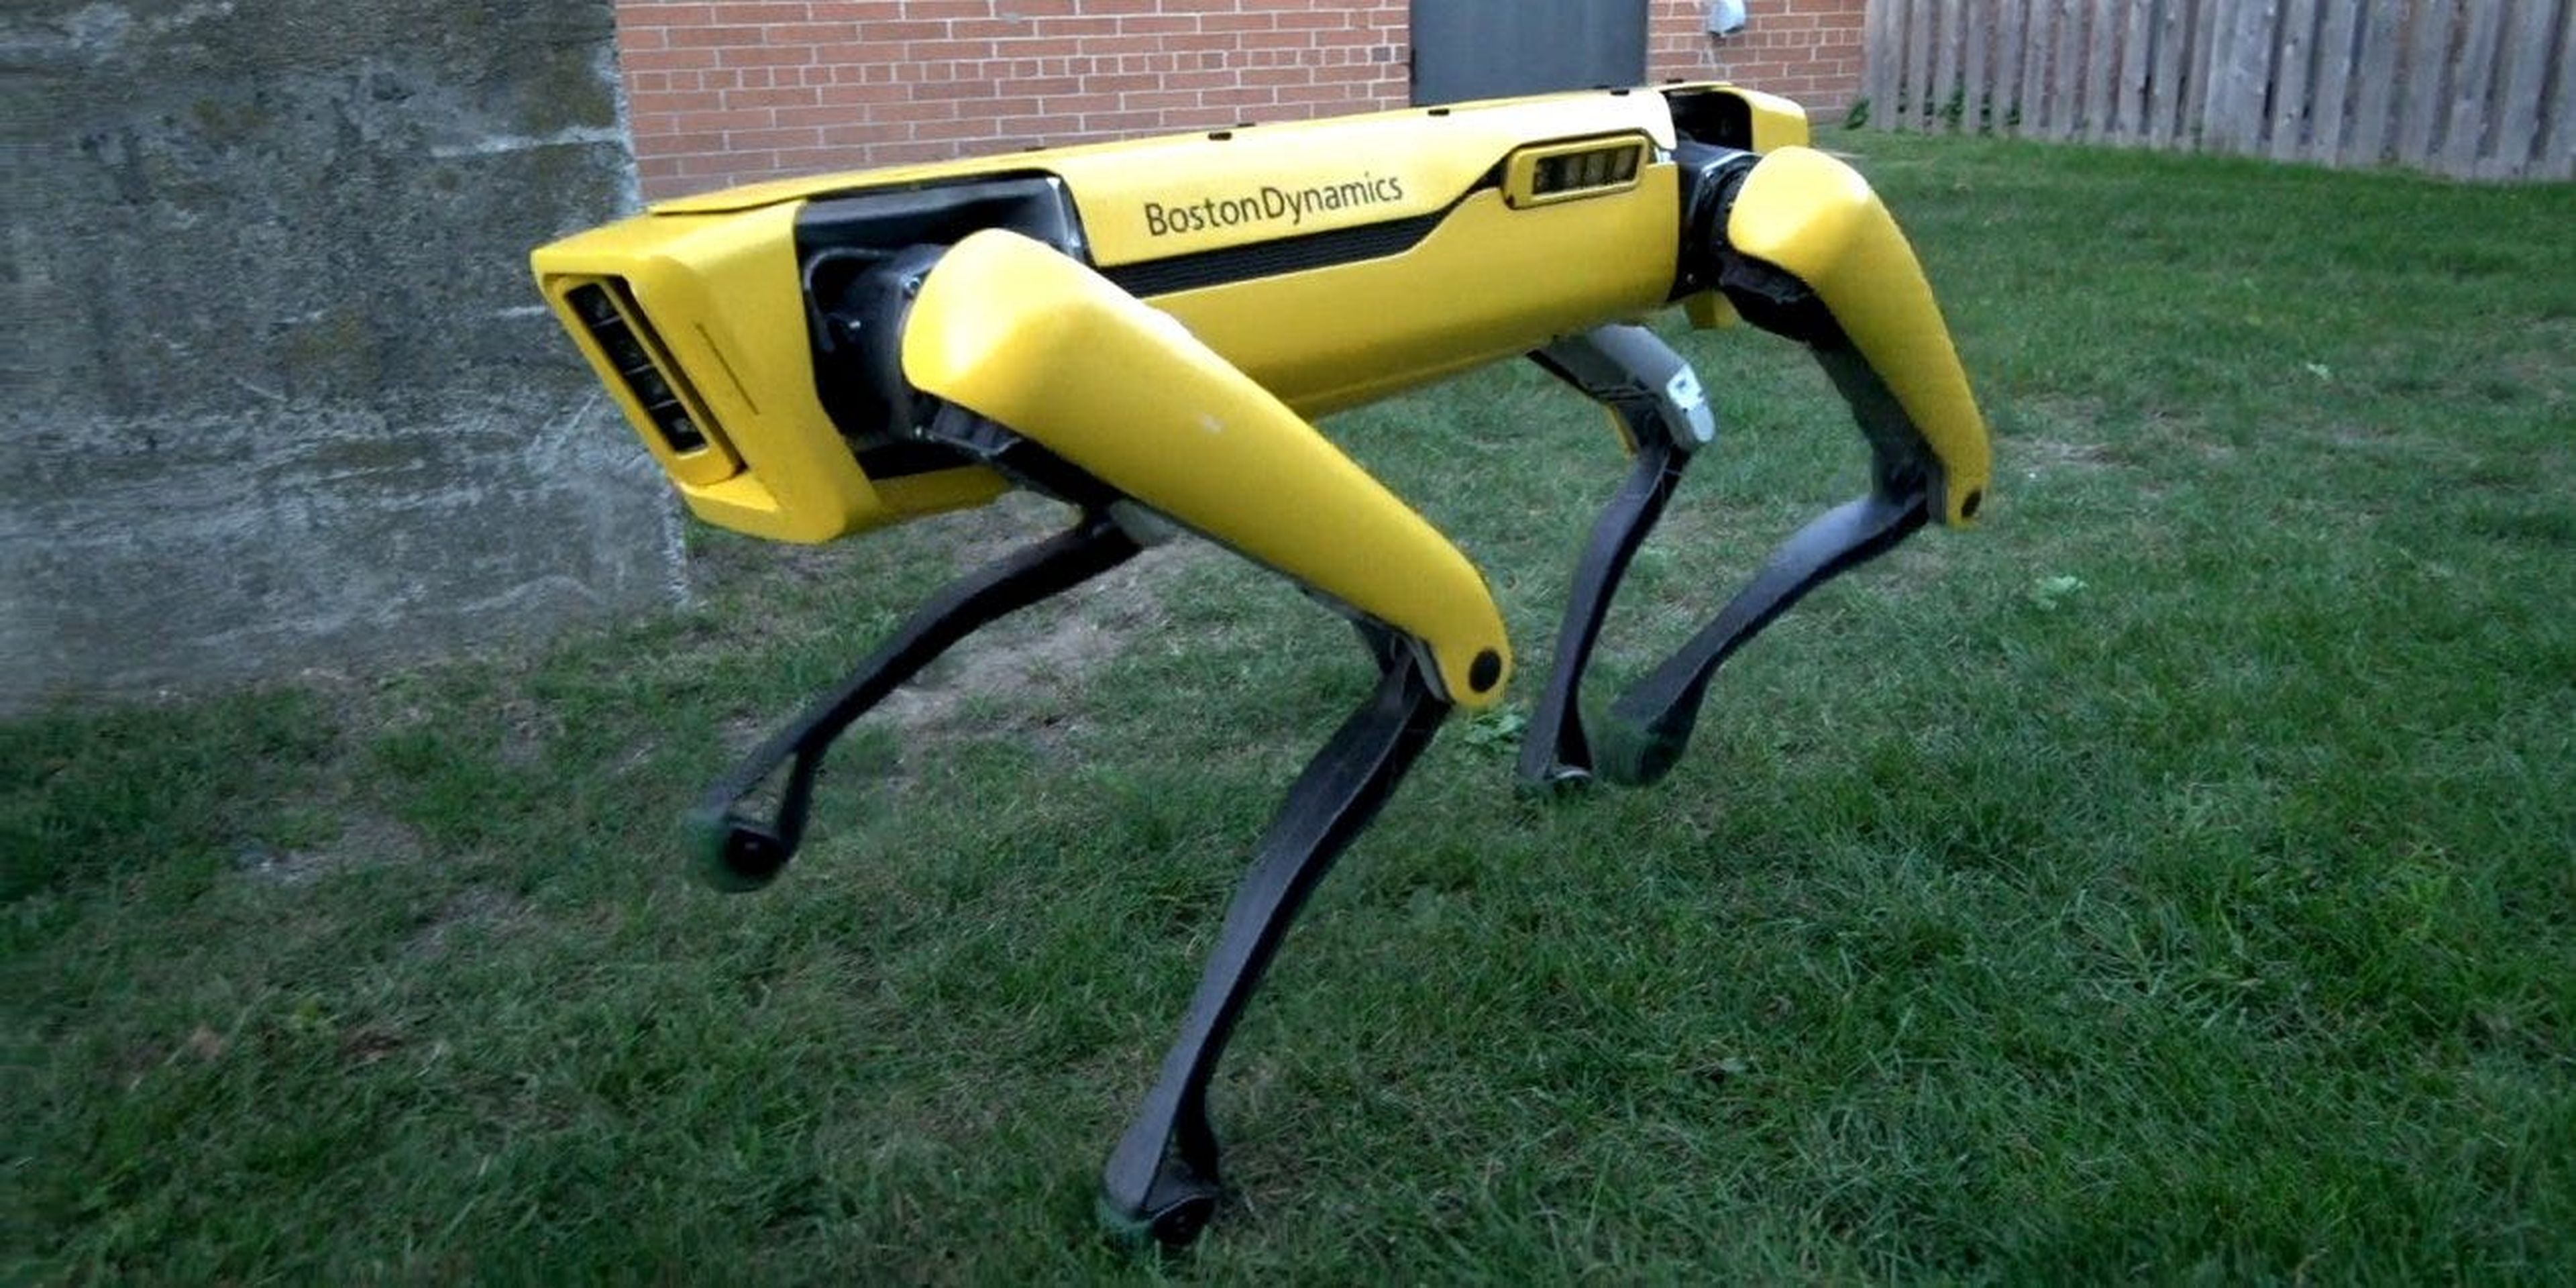 Boston Dynamics fabrica diferentes robots. Este modelo en concreto de llama Spot.